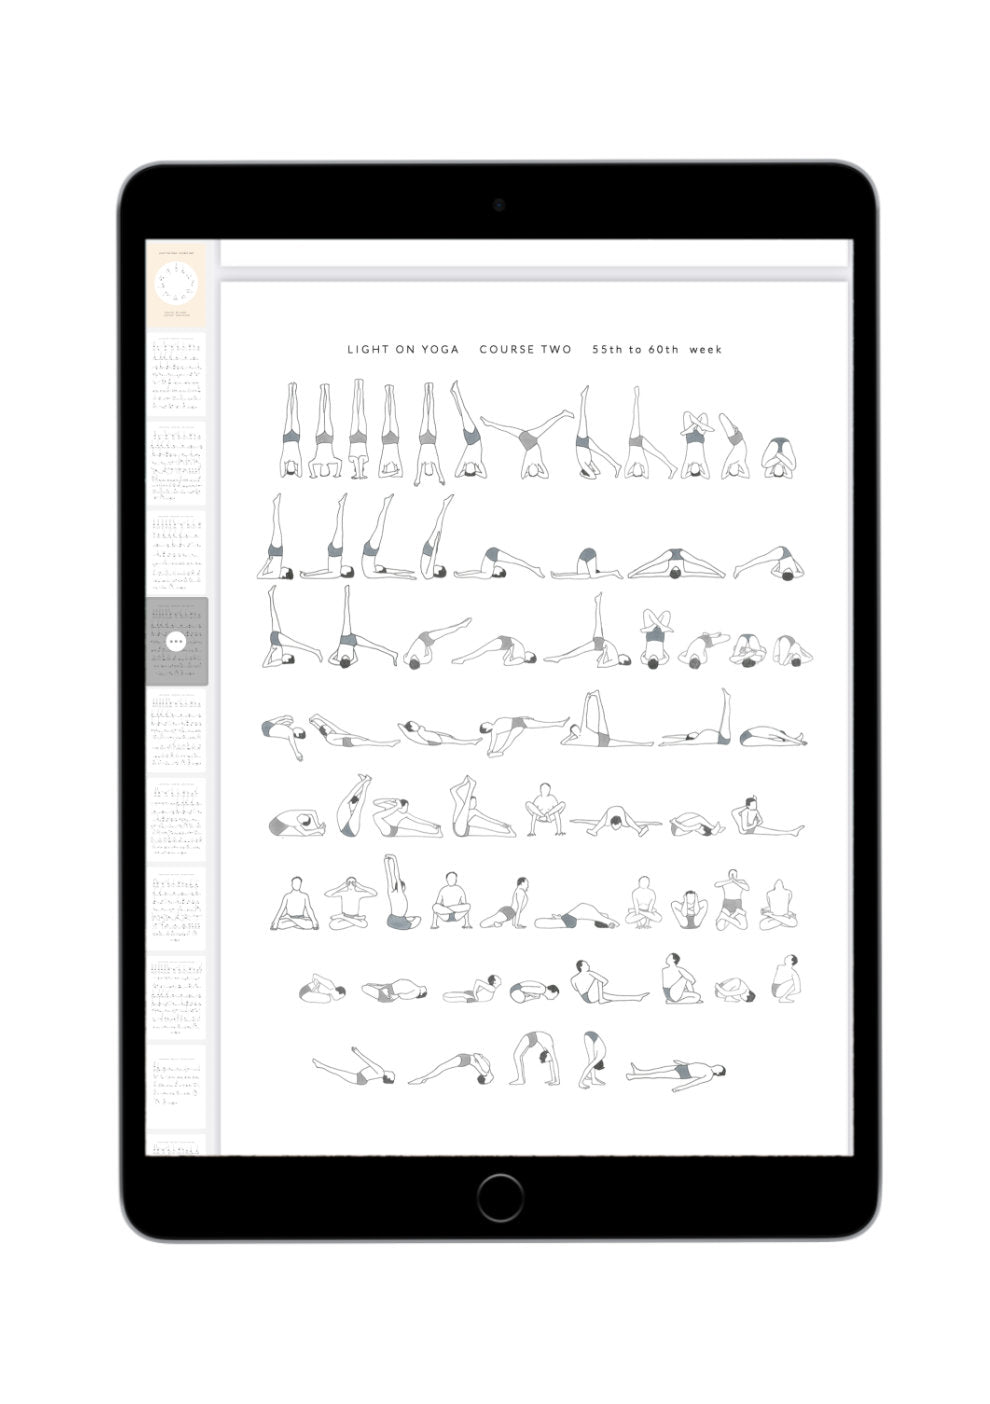 Svejar Yoga Illustrations - Light on Yoga Course 2 - Mockup iPad